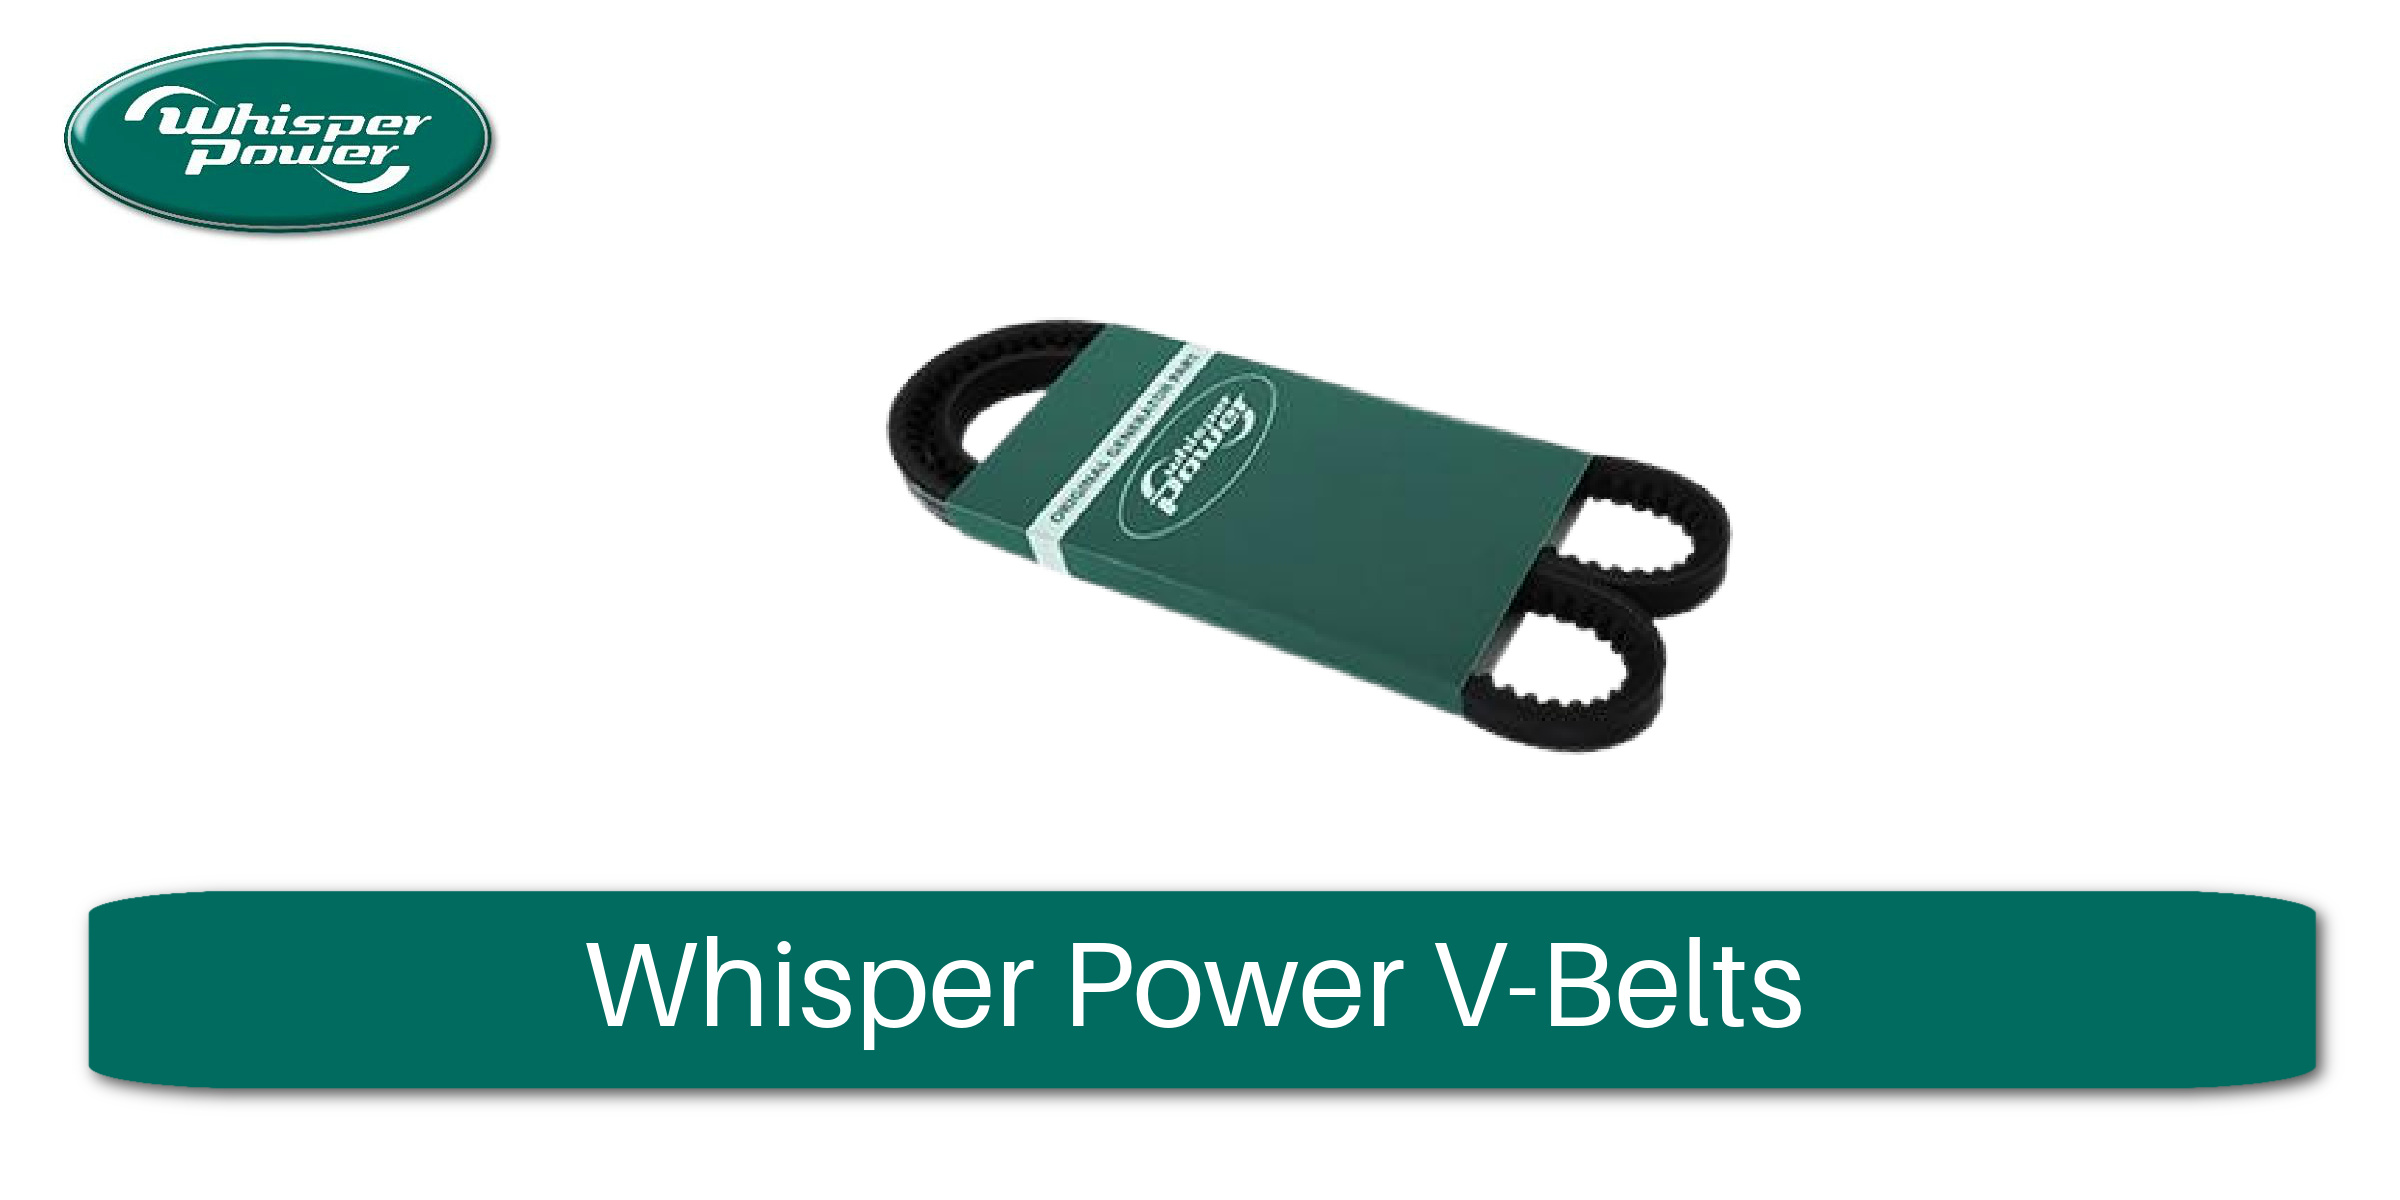 Whisper Power V-Belts